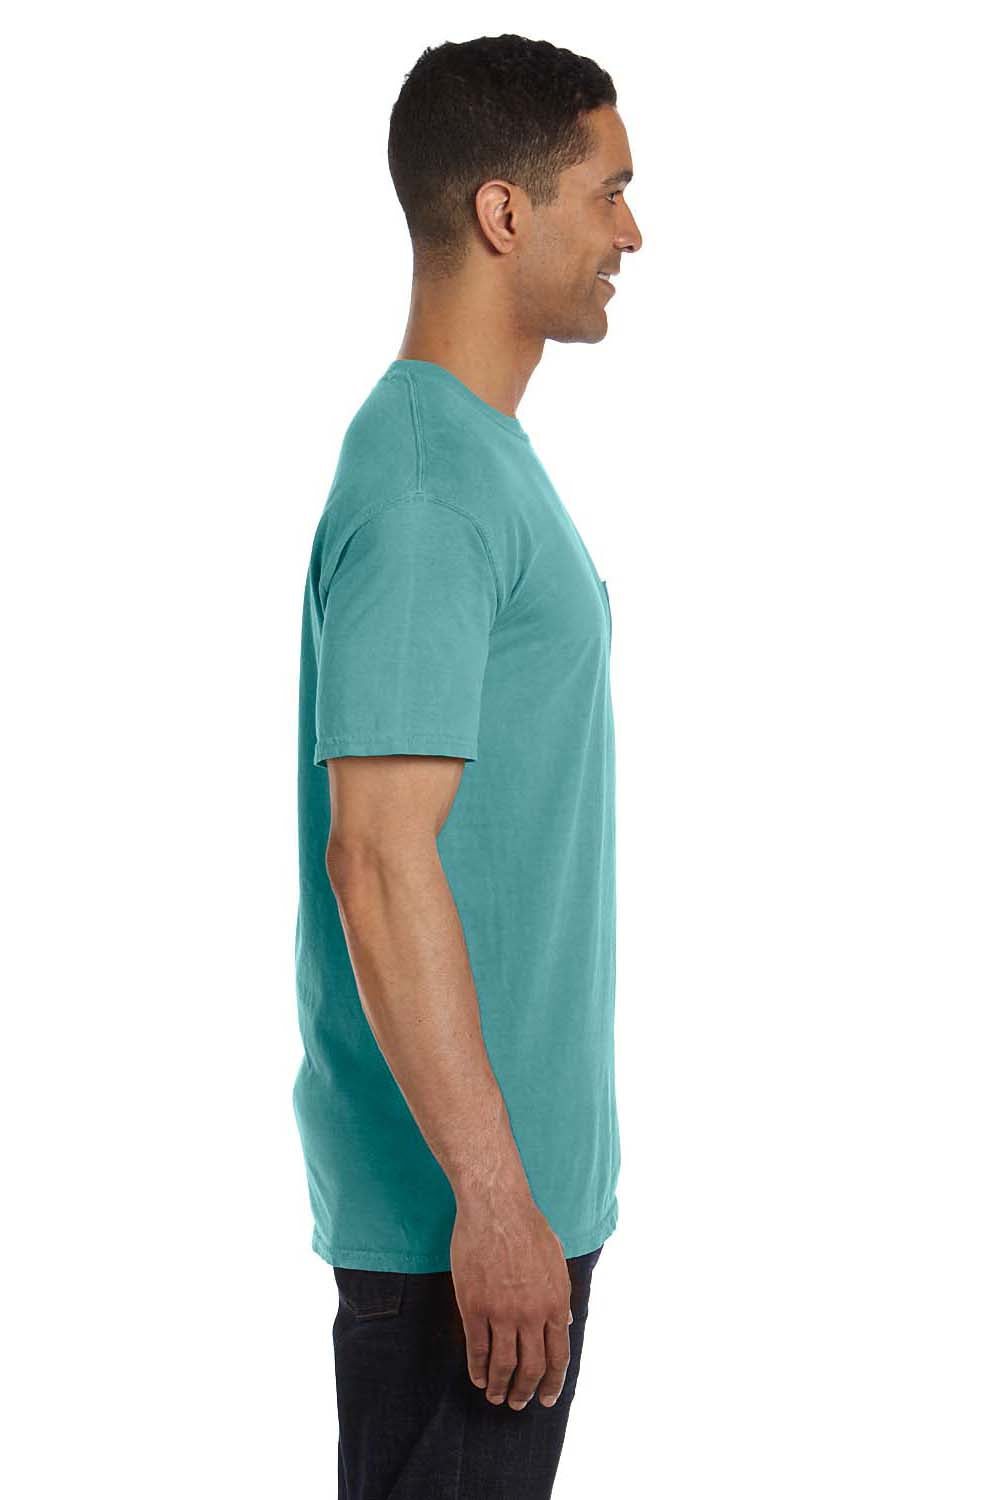 Comfort Colors 6030CC Mens Short Sleeve Crewneck T-Shirt w/ Pocket Seafoam Green Side